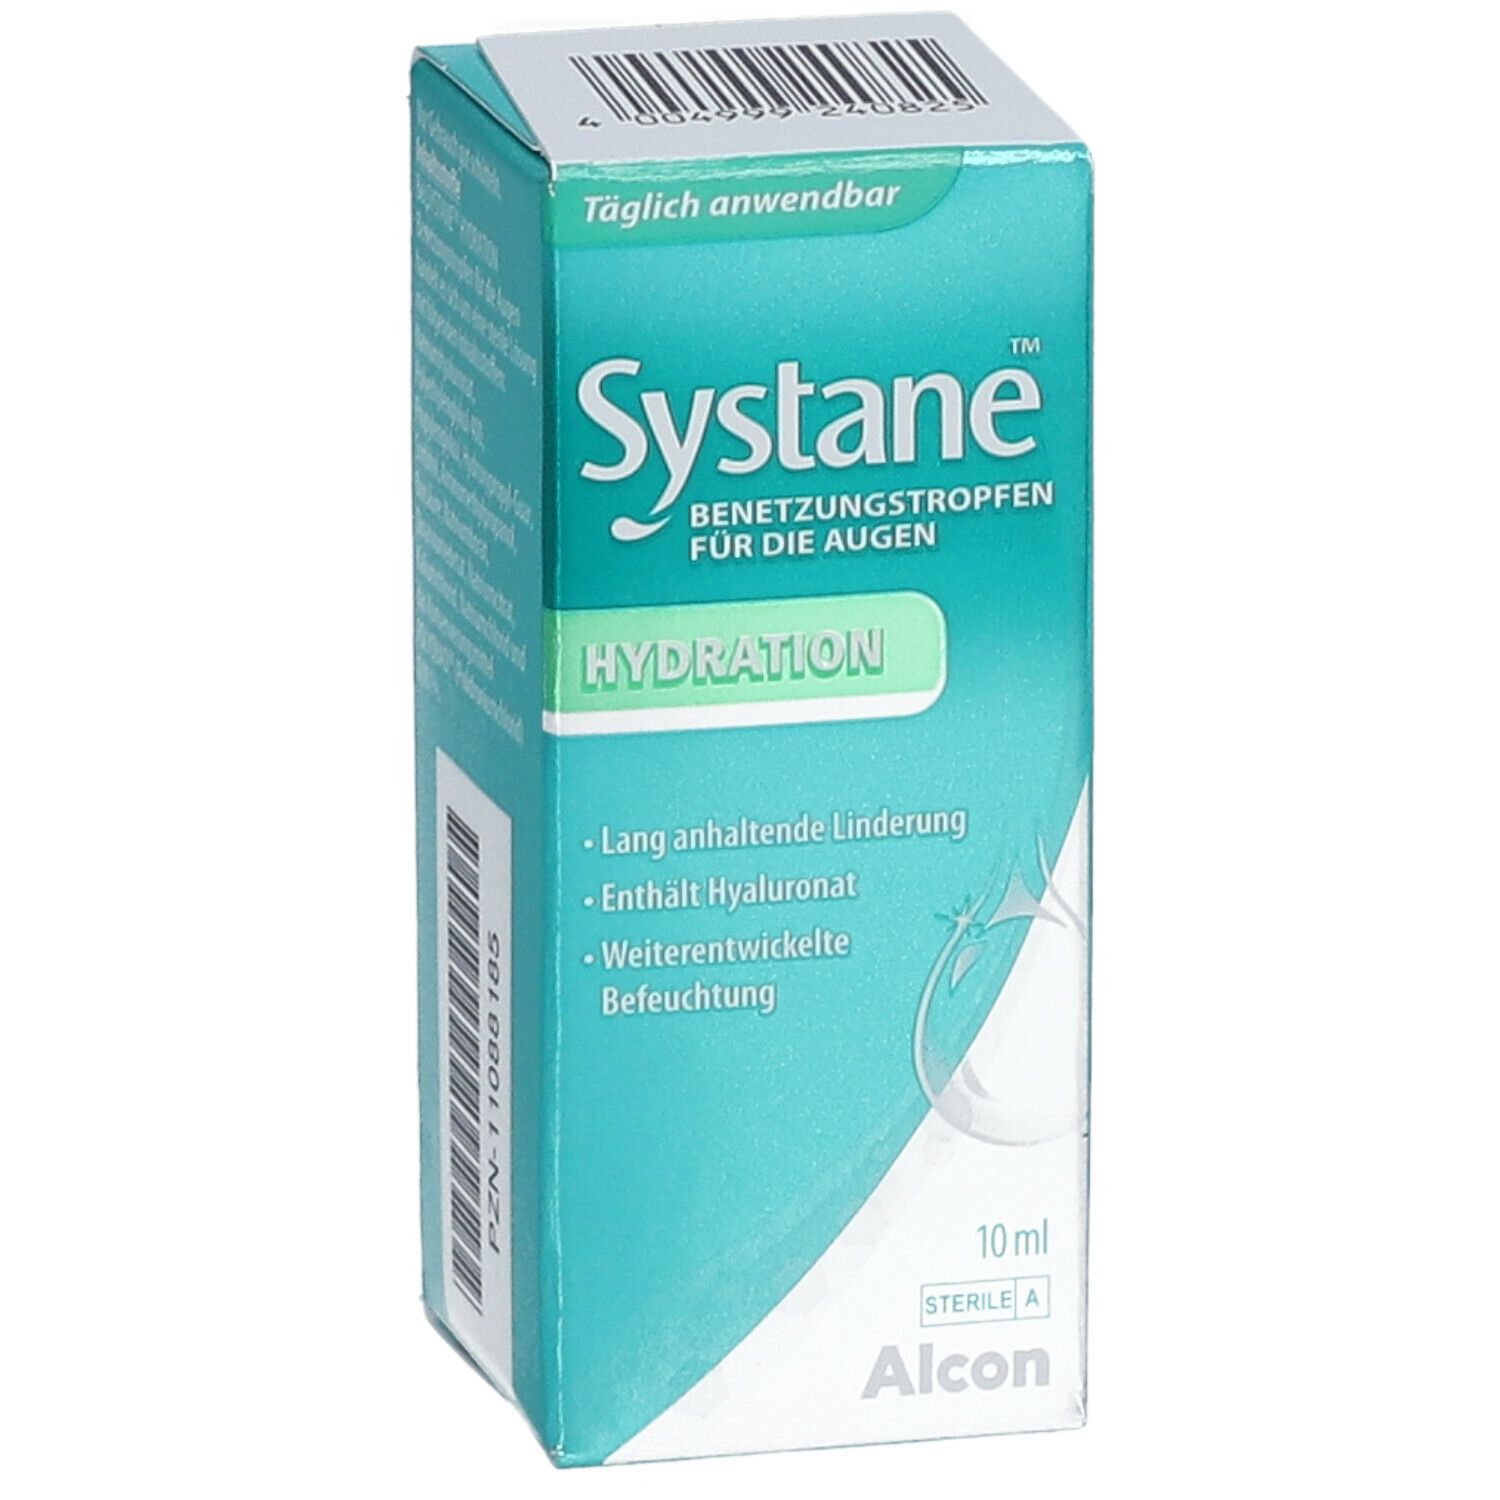 Systane® HYDRATION